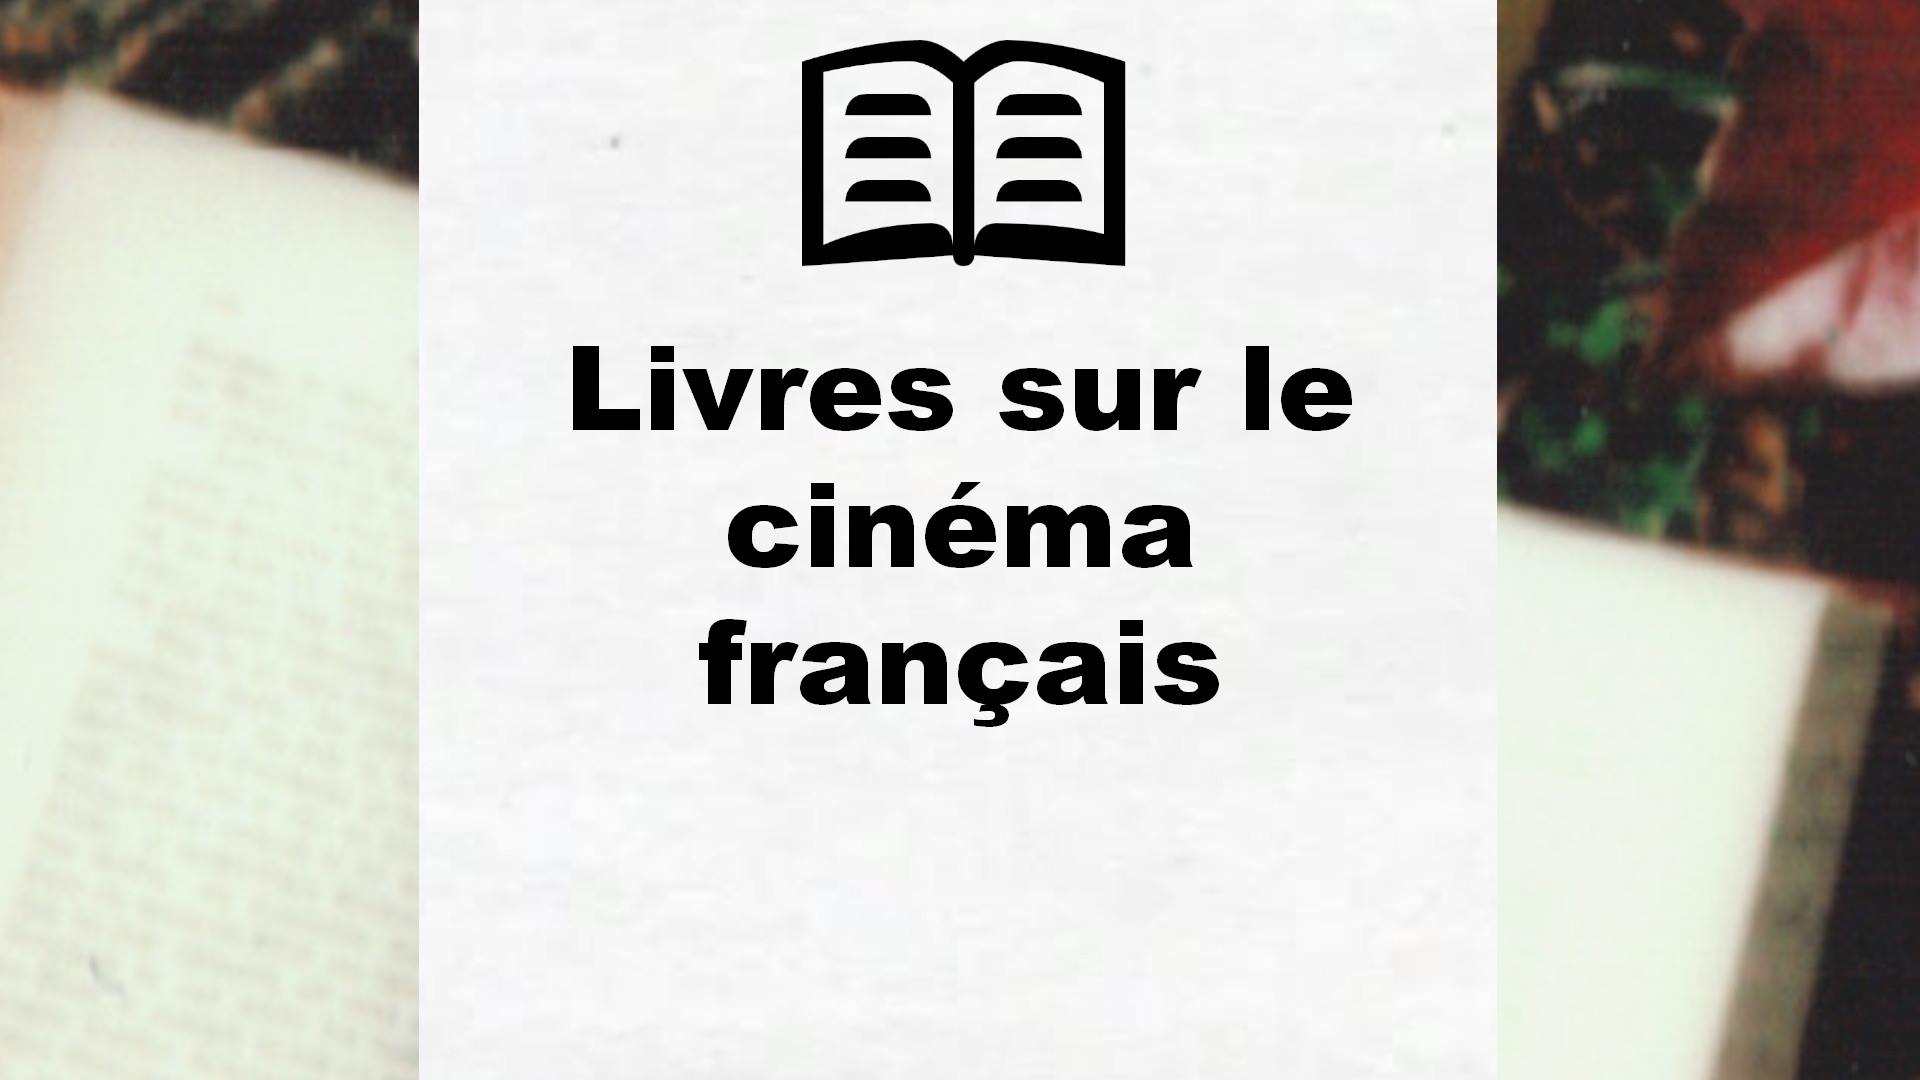 Livres sur le cinéma français